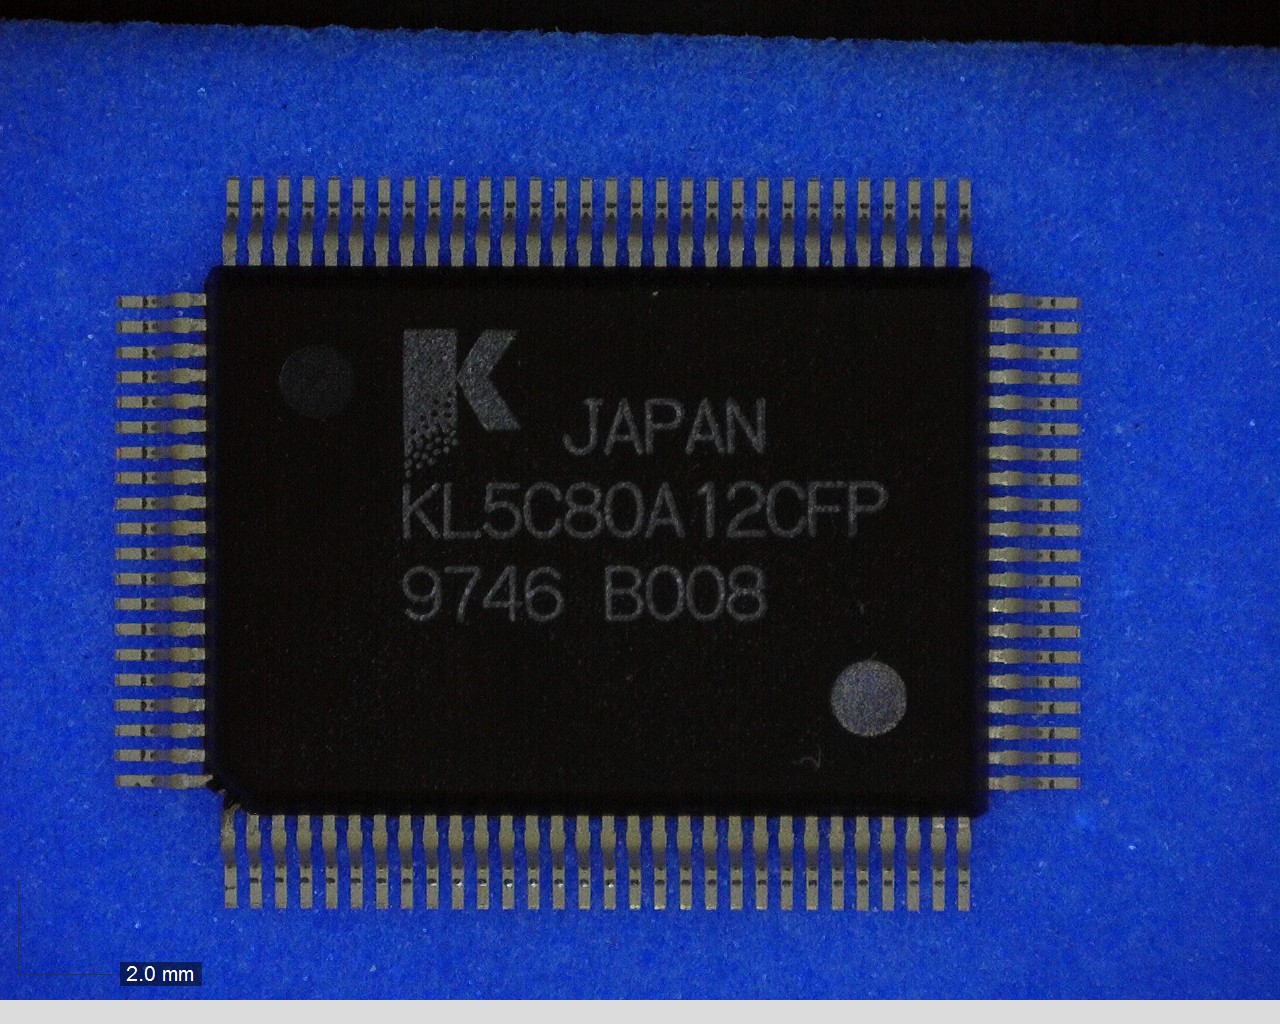 KL5C80A12CFP